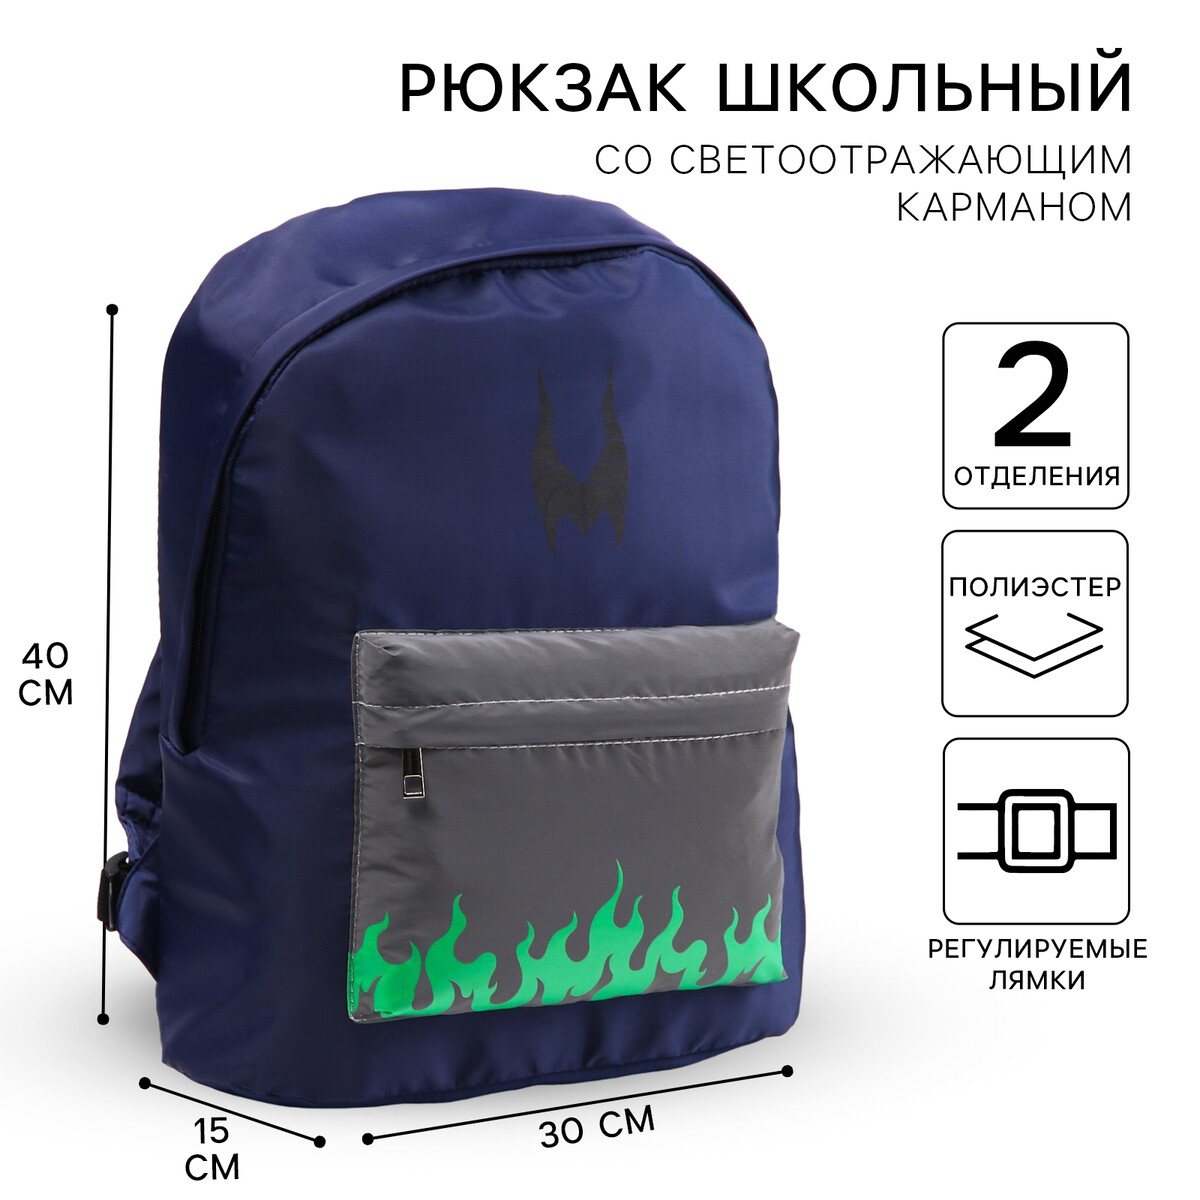 Рюкзак со светоотражающим карманом, 30 см х 15 см х 40 см Disney